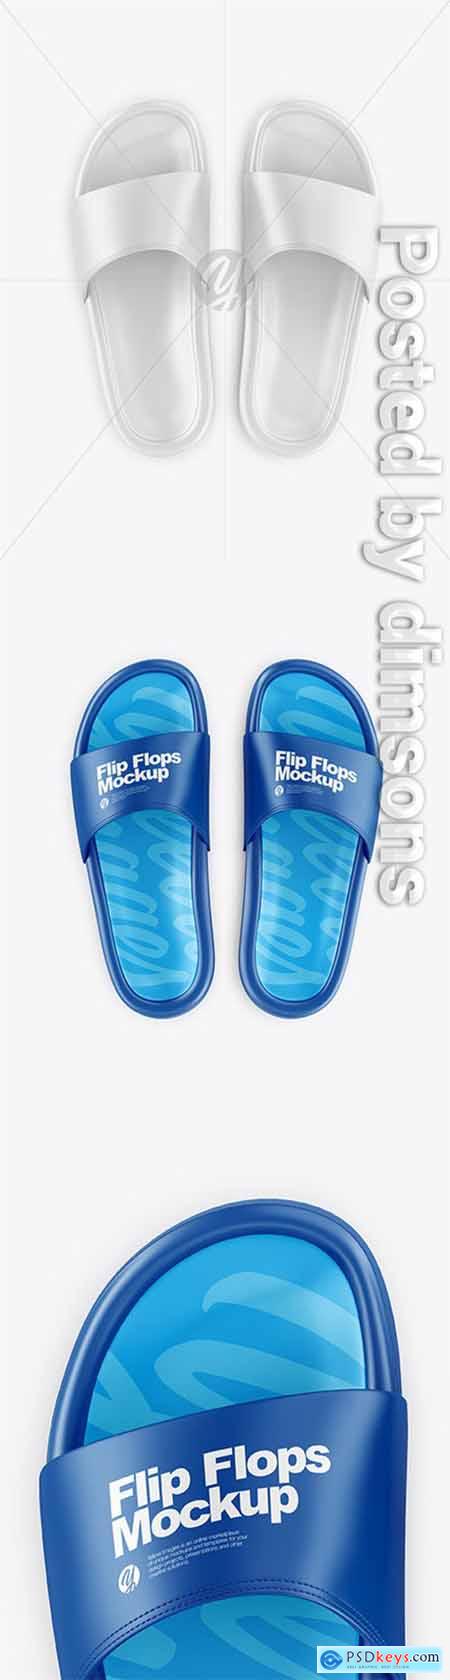 Flip Flops Mockup - Top View 64459